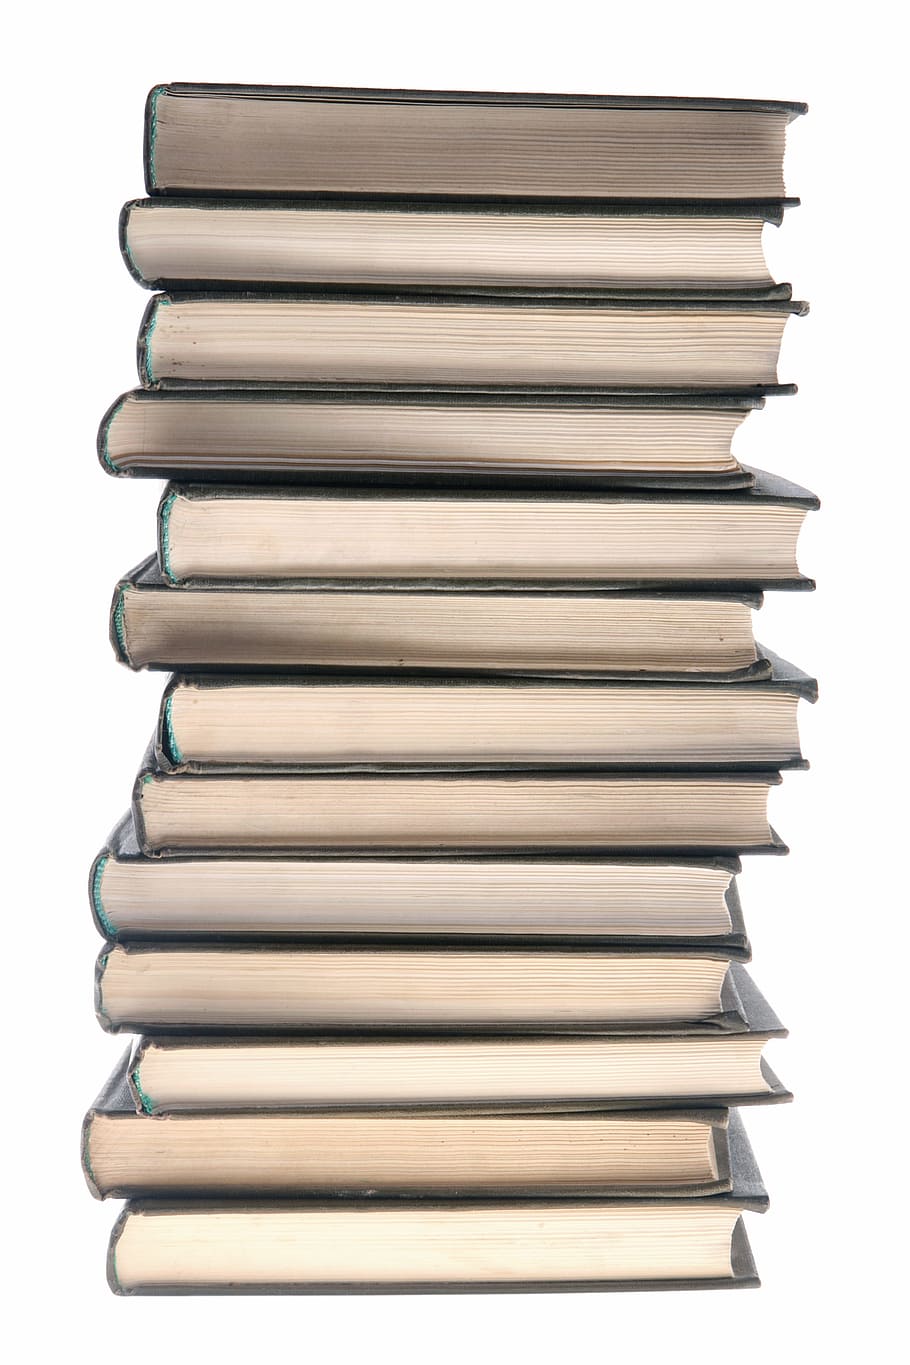 livro, livros, educação, enciclopédia, pilha, informação, isolado, conhecimento, literatura, publicação